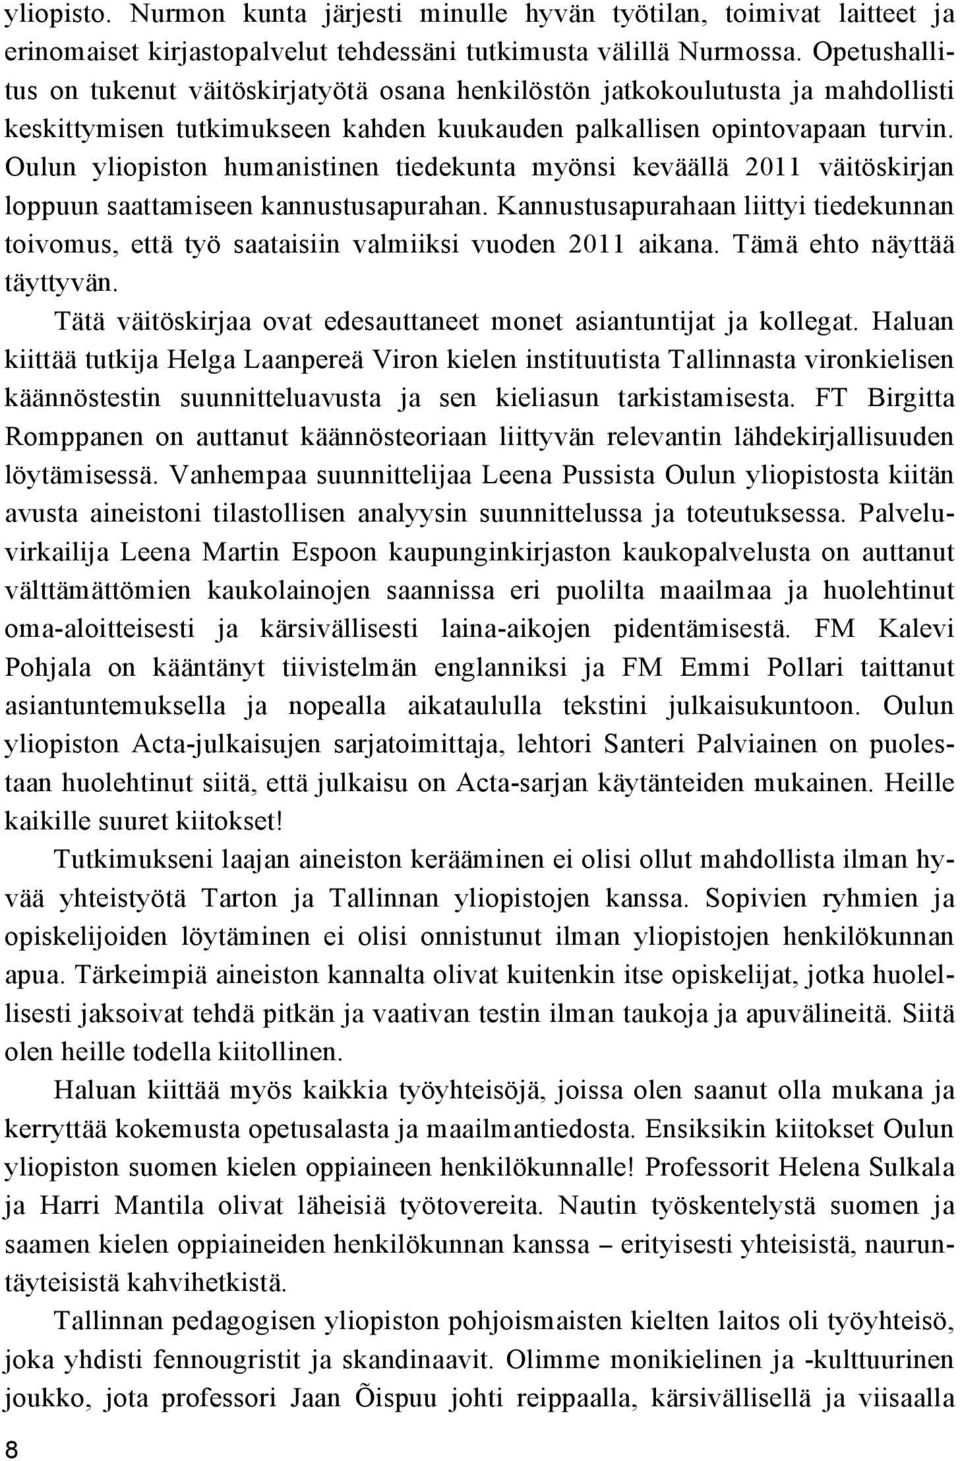 Oulun yliopiston humanistinen tiedekunta myönsi keväällä 2011 väitöskirjan loppuun saattamiseen kannustusapurahan.